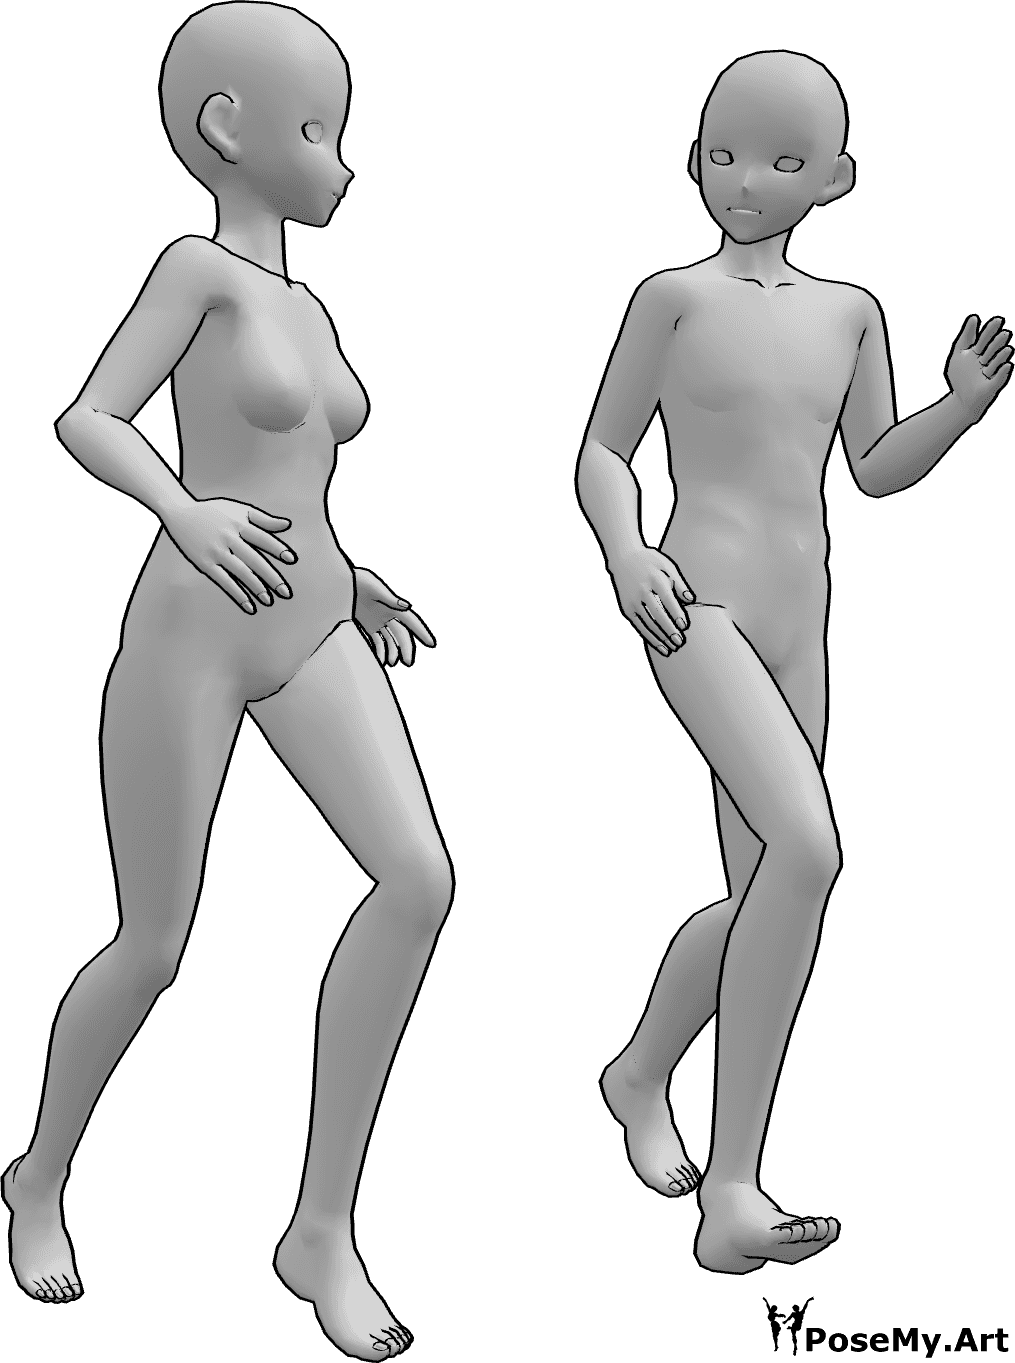 Posen-Referenz- Weibliche männliche Laufpose - Anime Weibchen und Männchen laufen zusammen und schauen sich an